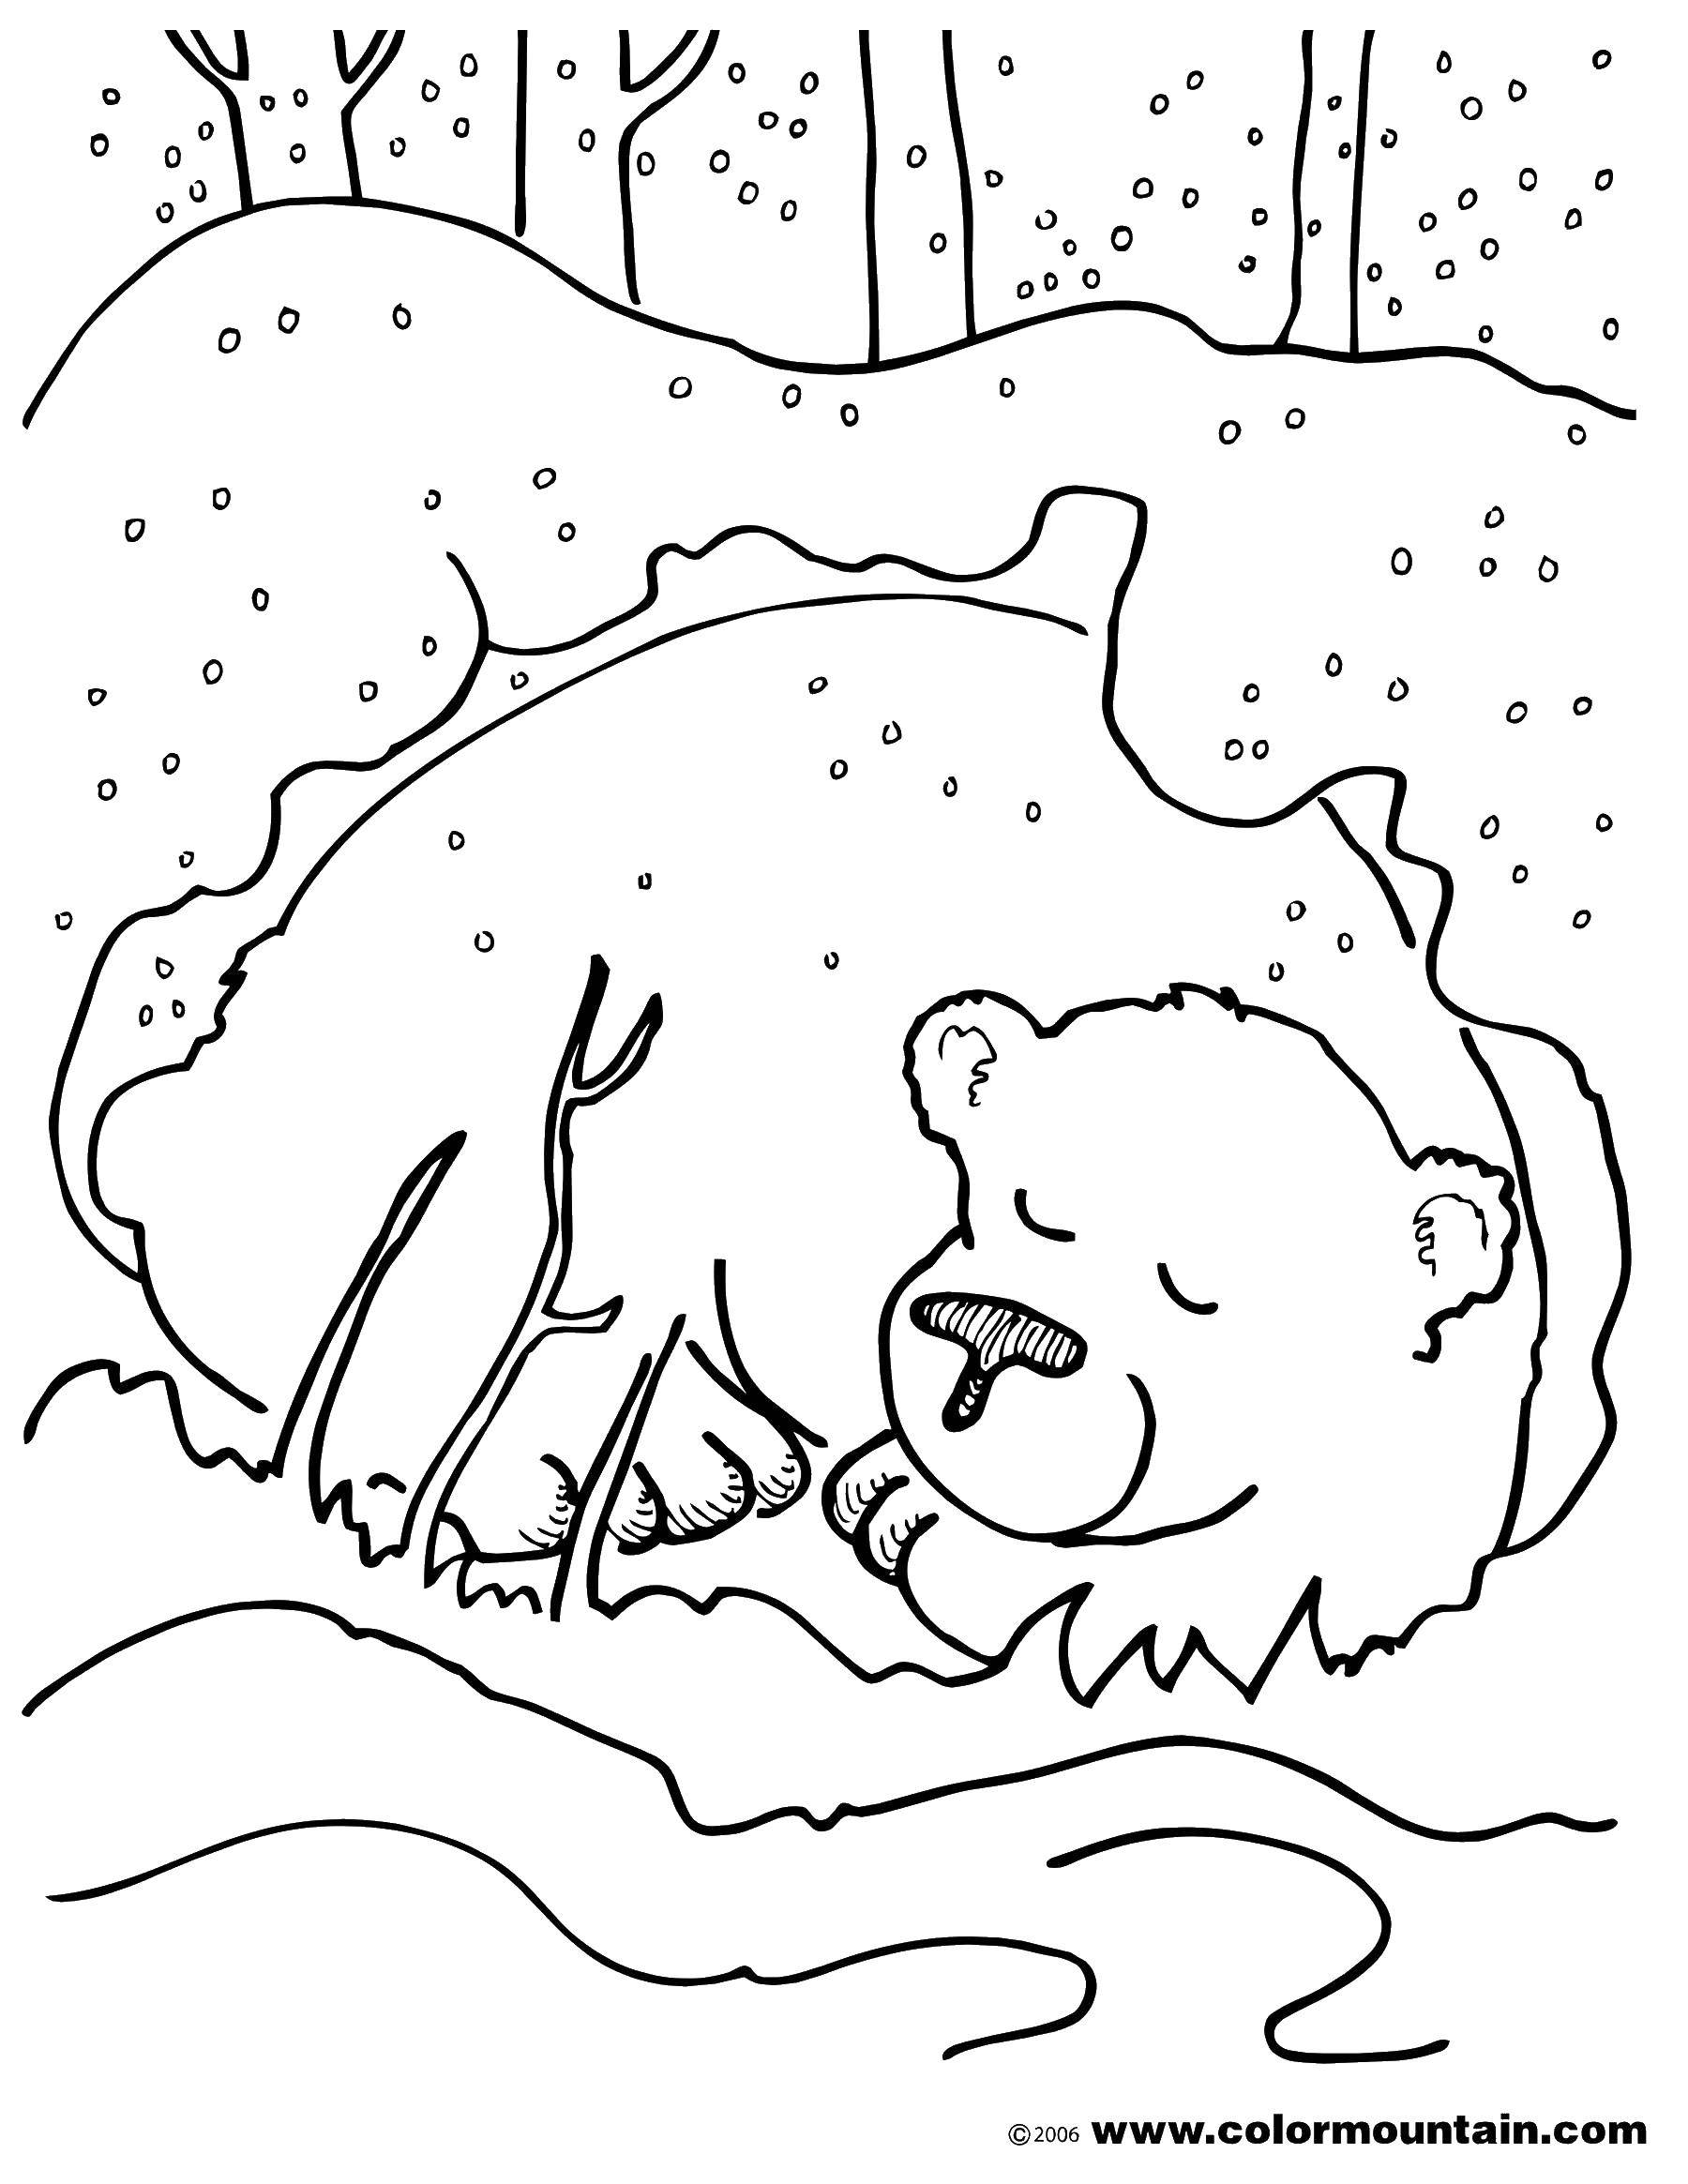 Название: Раскраска Мишка под снегом. Категория: Животные. Теги: животные, медведи, зима, снег.